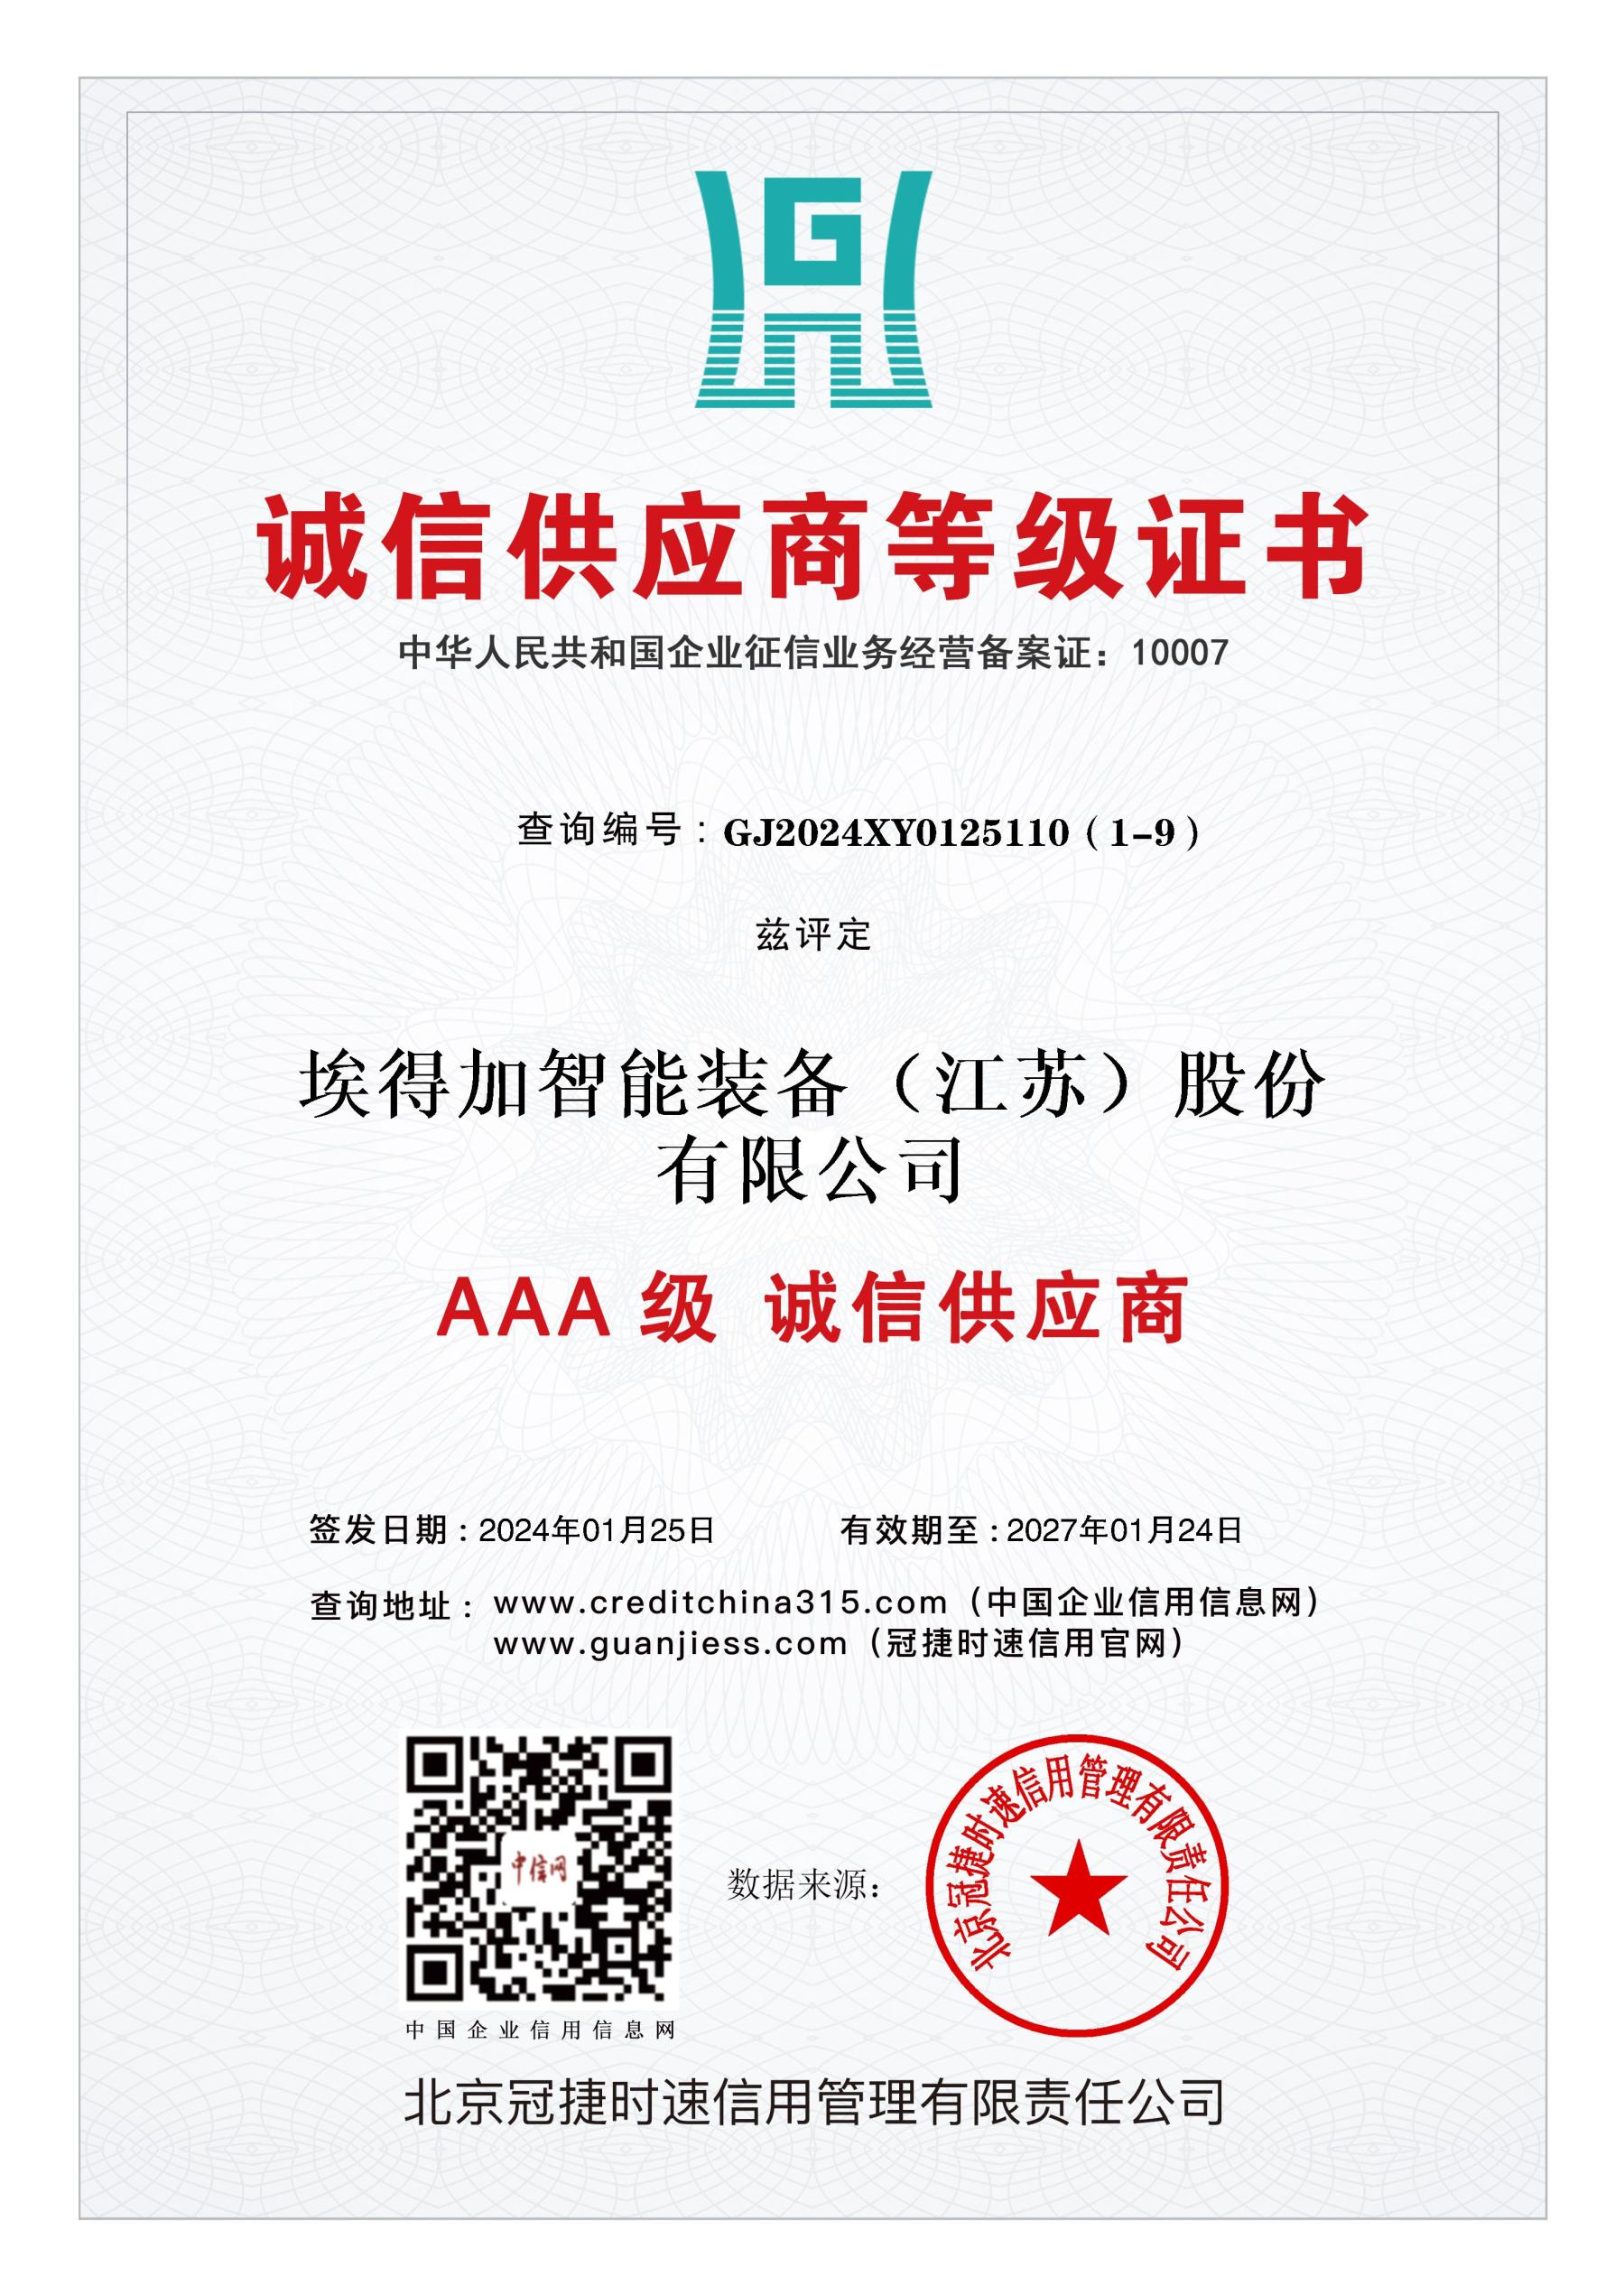 AAA诚信供应商等级证书